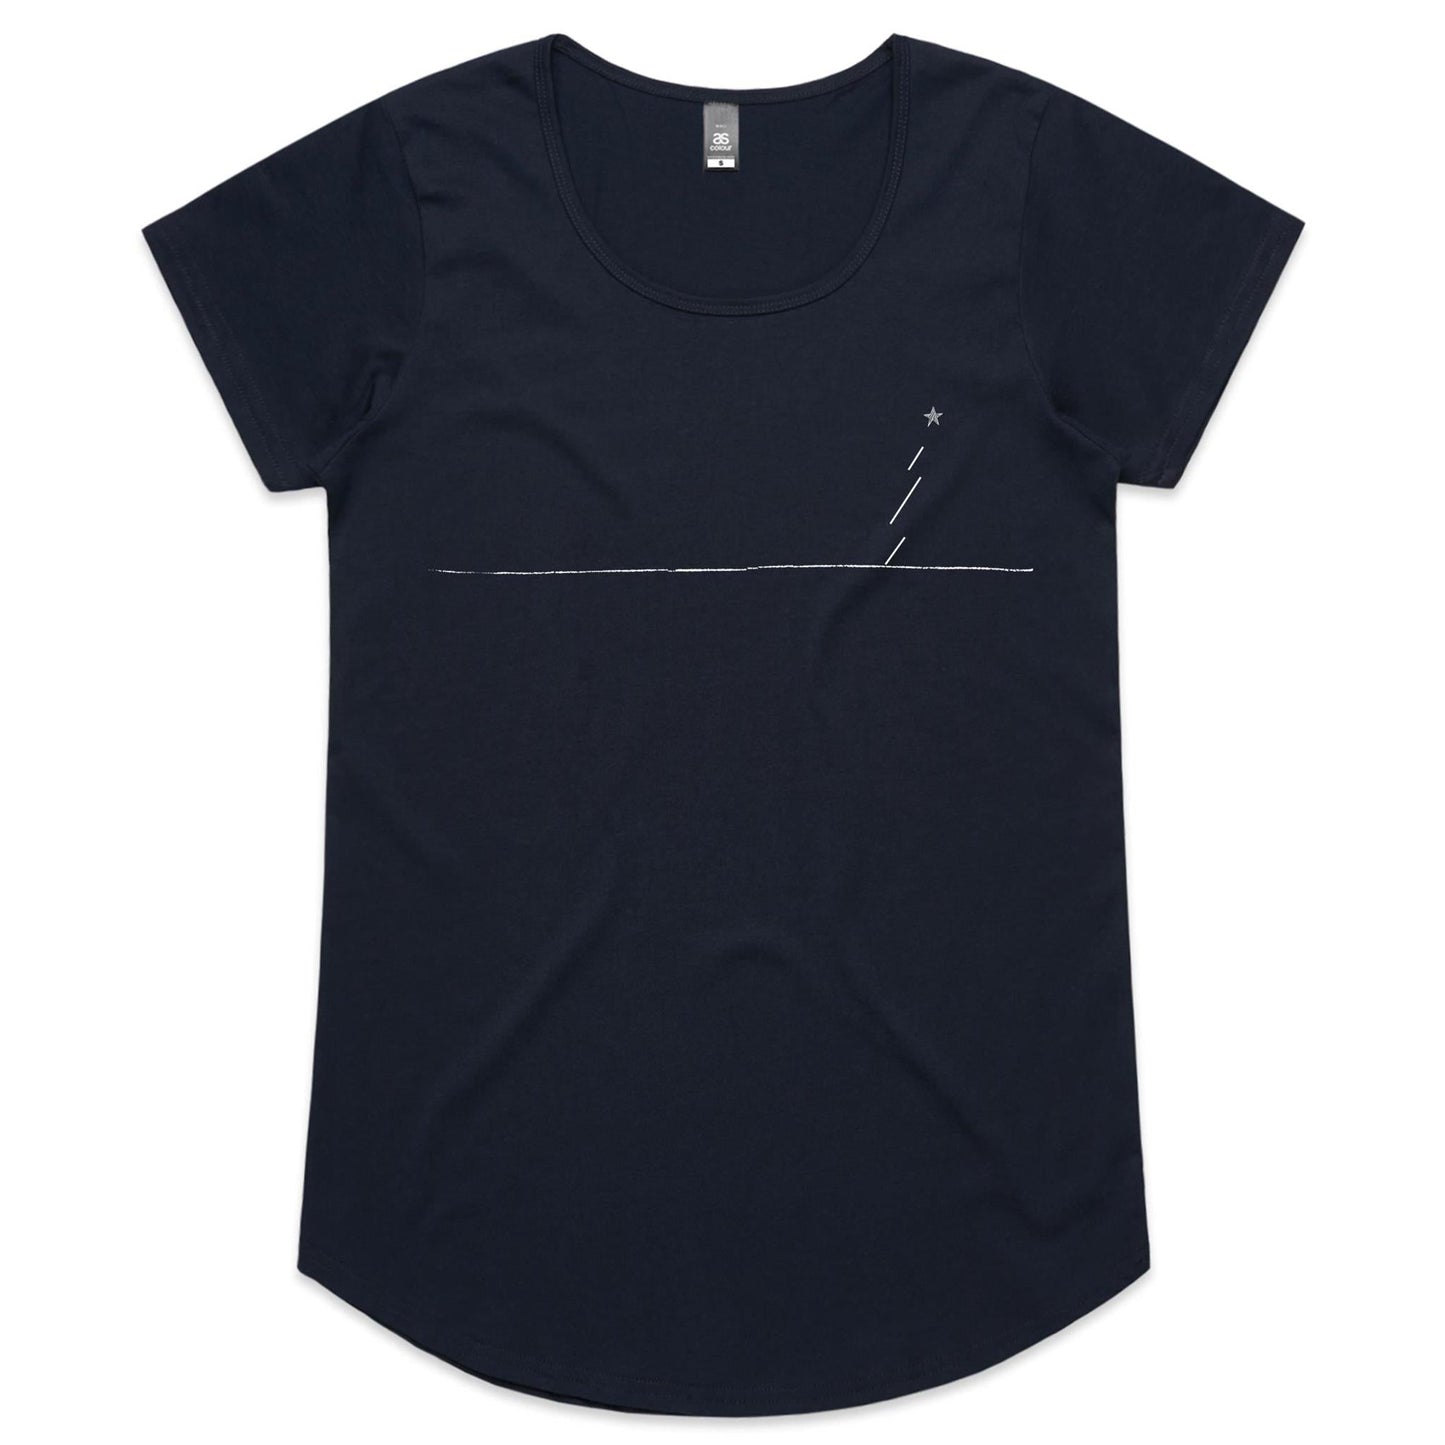 Navy / Womens 8 / XS Minimalist Xmas T-Shirt - Women's Scoop Tee